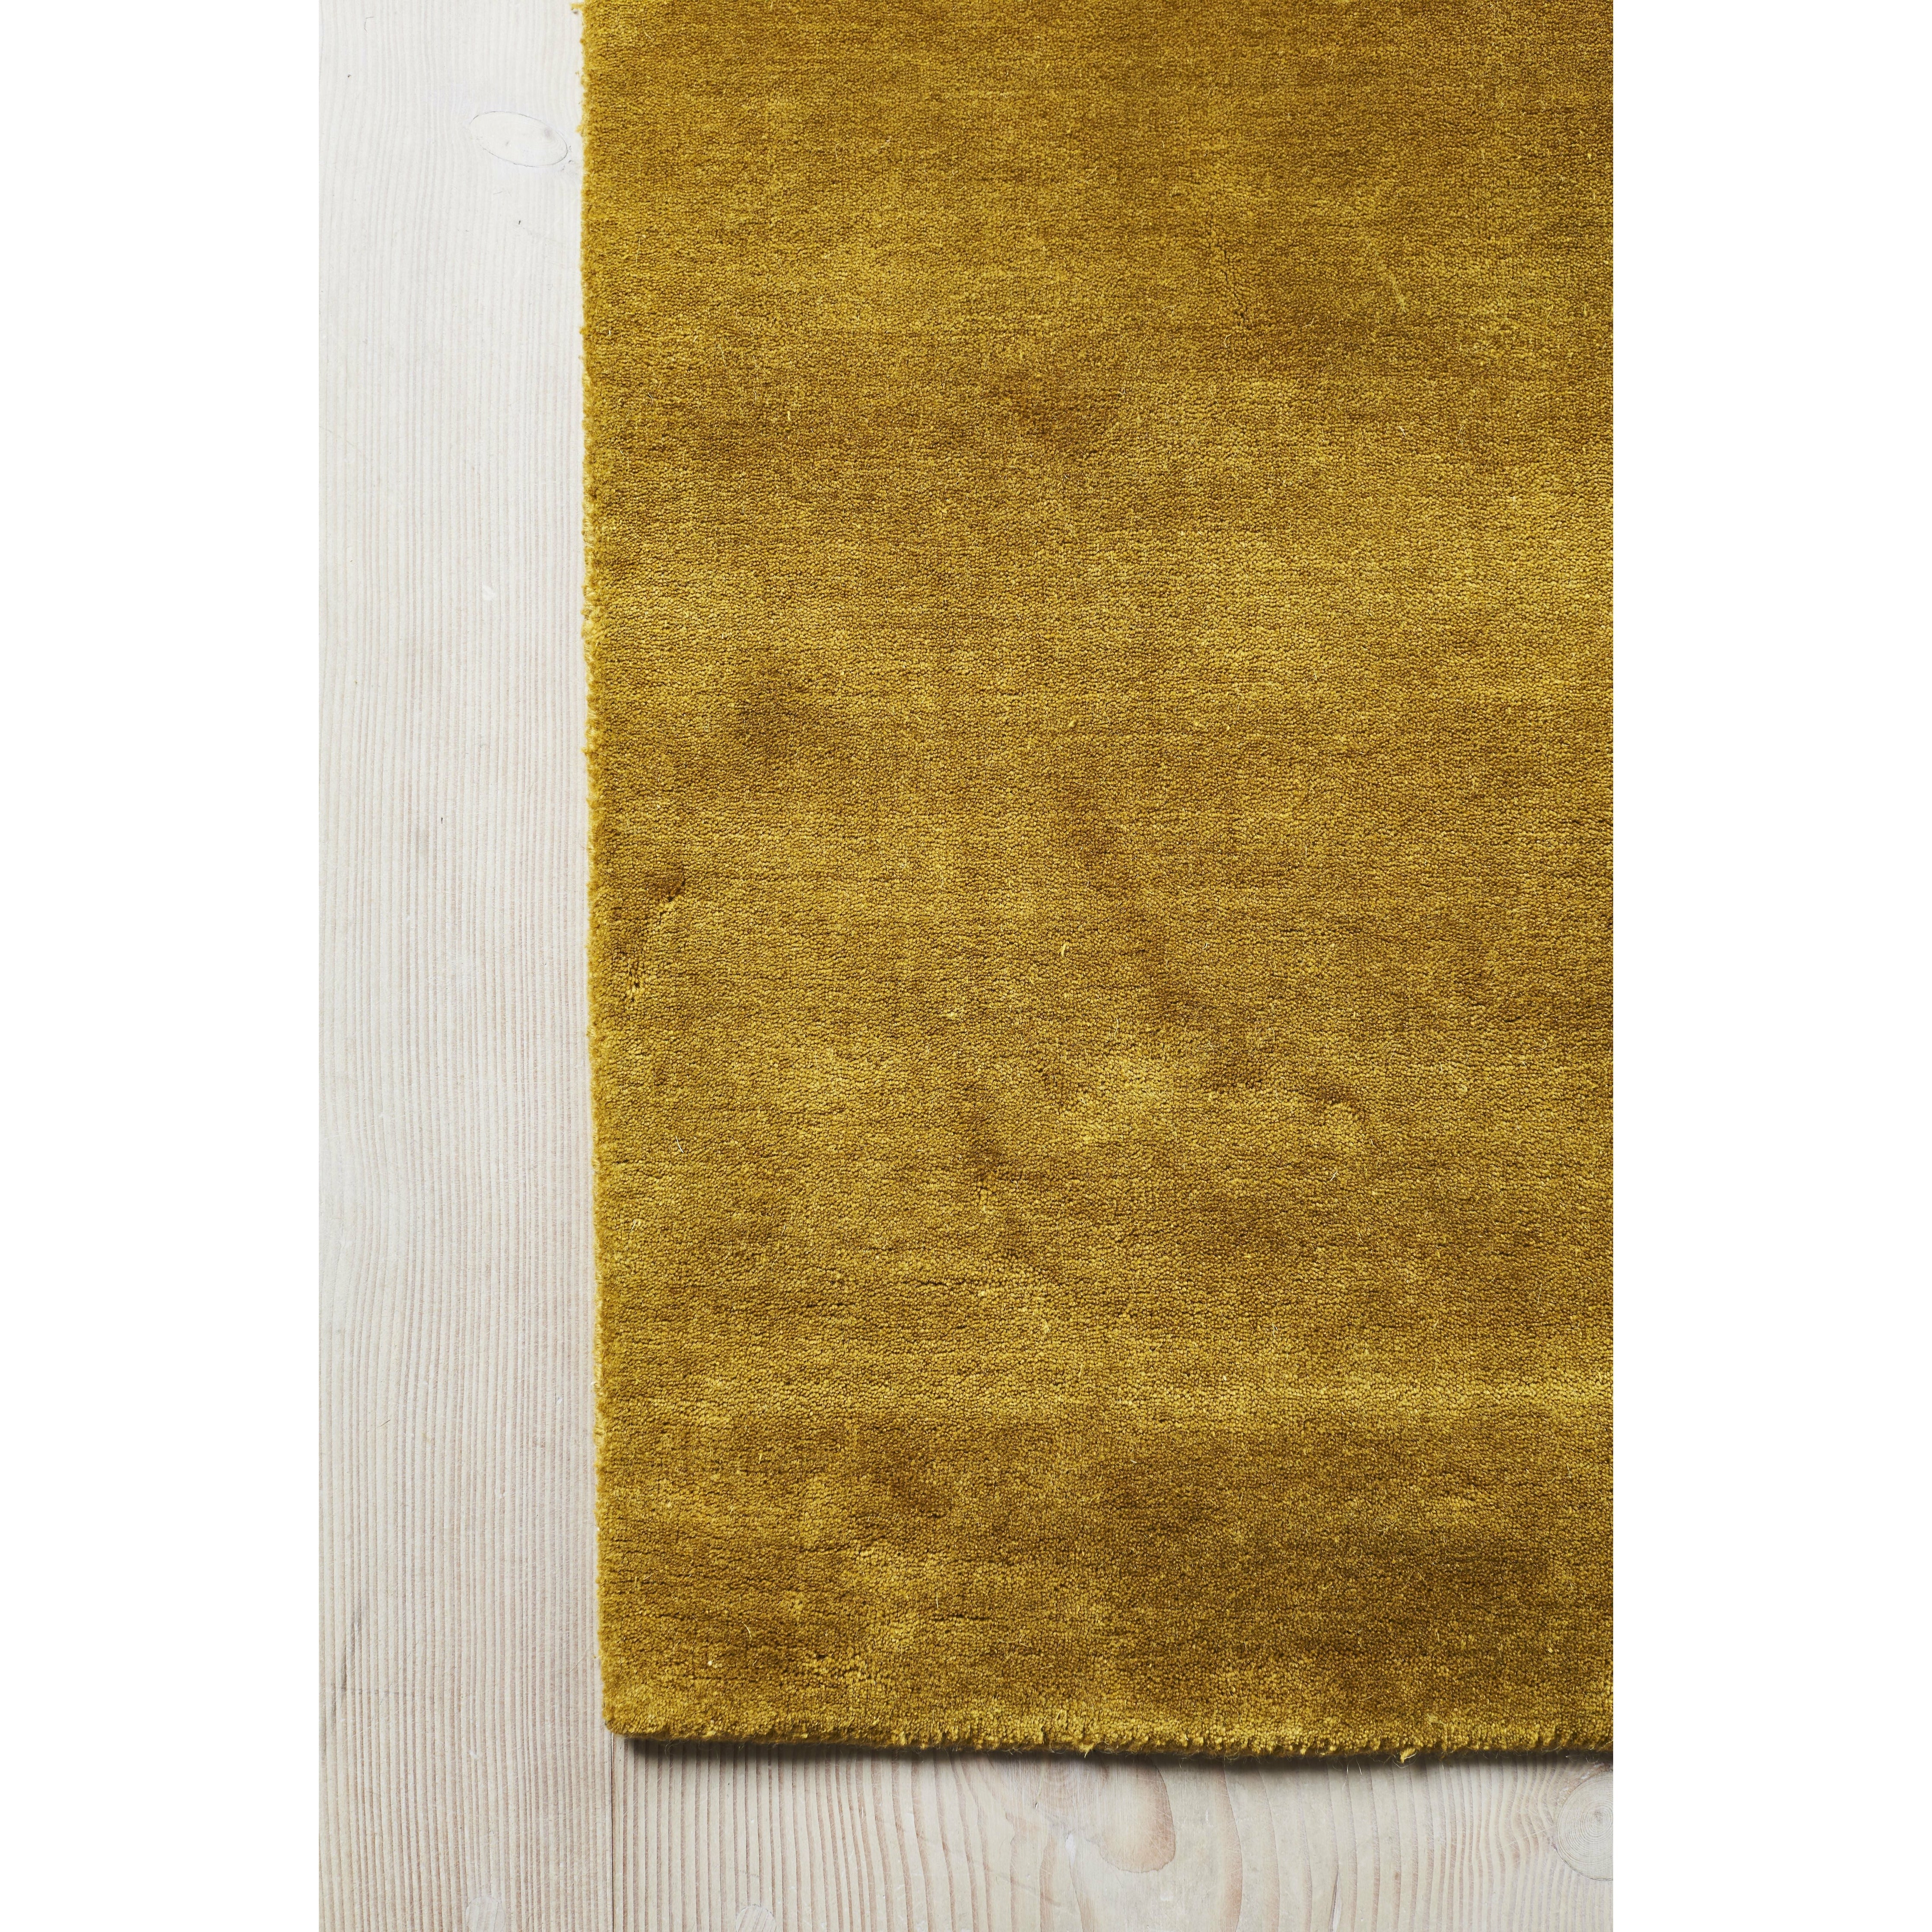 Massimo Erde Bambusteppich Chinesisch Gelb, 200x300 cm